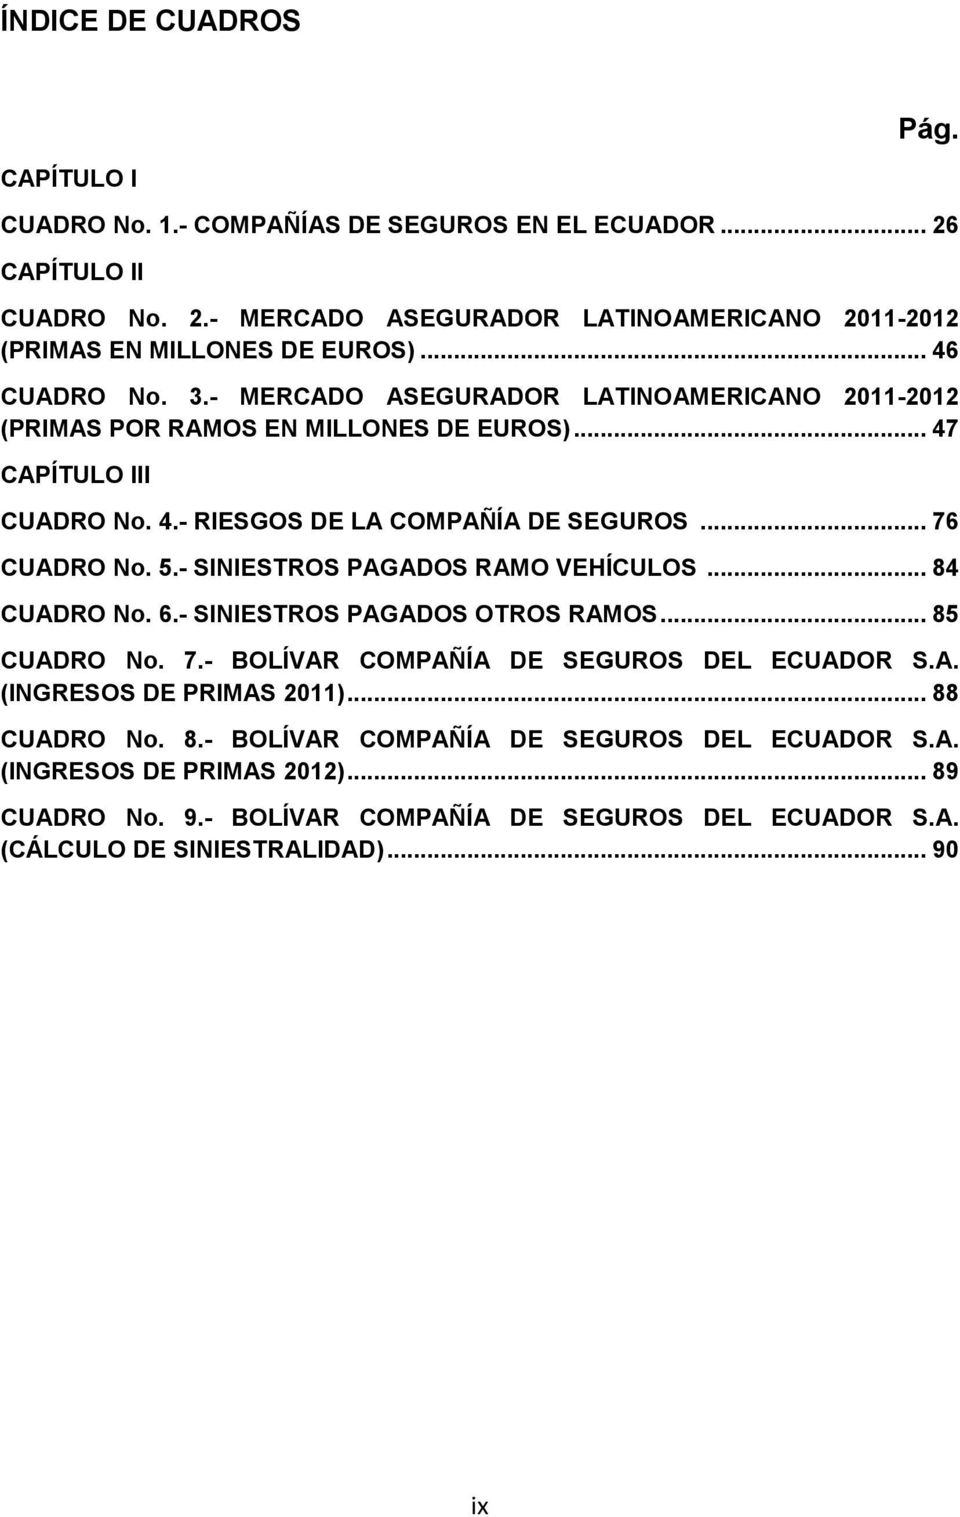 5.- SINIESTROS PAGADOS RAMO VEHÍCULOS... 84 CUADRO No. 6.- SINIESTROS PAGADOS OTROS RAMOS... 85 CUADRO No. 7.- BOLÍVAR COMPAÑÍA DE SEGUROS DEL ECUADOR S.A. (INGRESOS DE PRIMAS 2011).